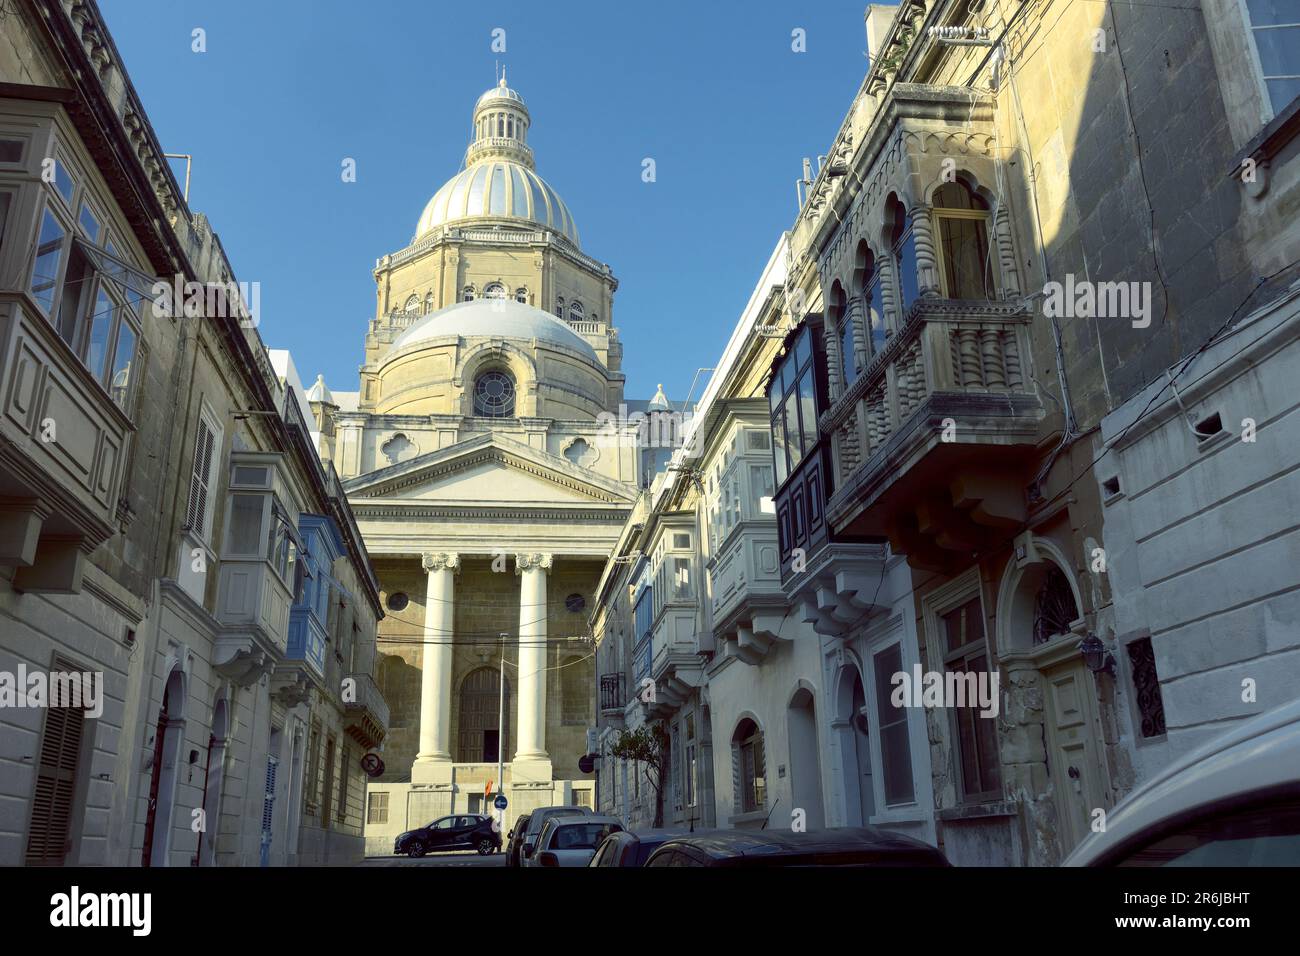 Basilika Christus des Königs und traditionelle geschlossene Holzbalkons (Gallarija) in einer Straße von Paola, Malta Stockfoto